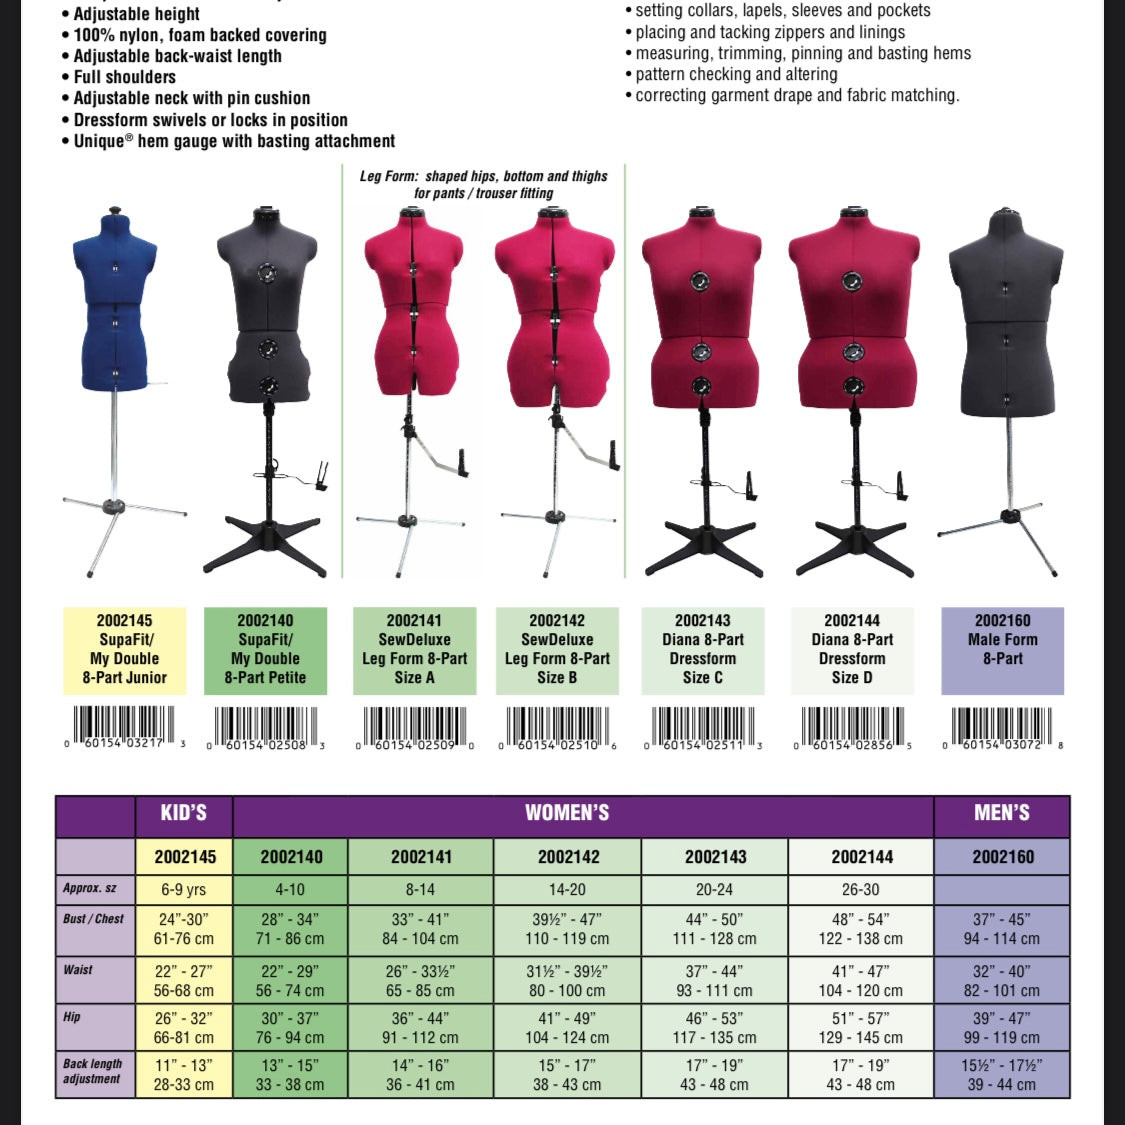 Dressform - Size C - Dress Size 20-24